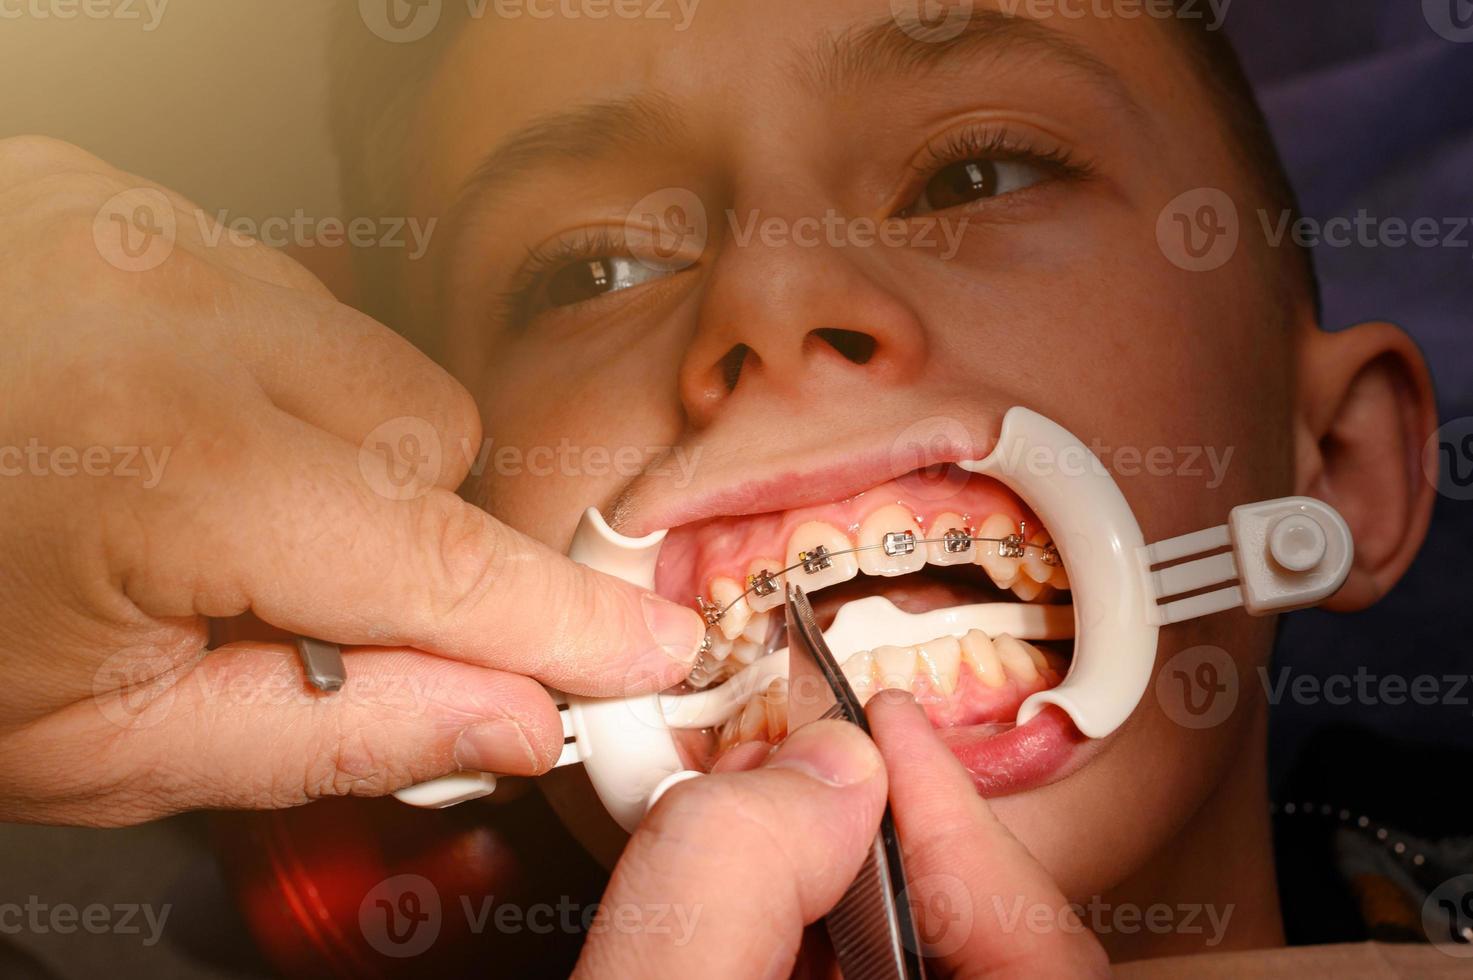 l'adolescent a un appareil dentaire collé à ses dents supérieures